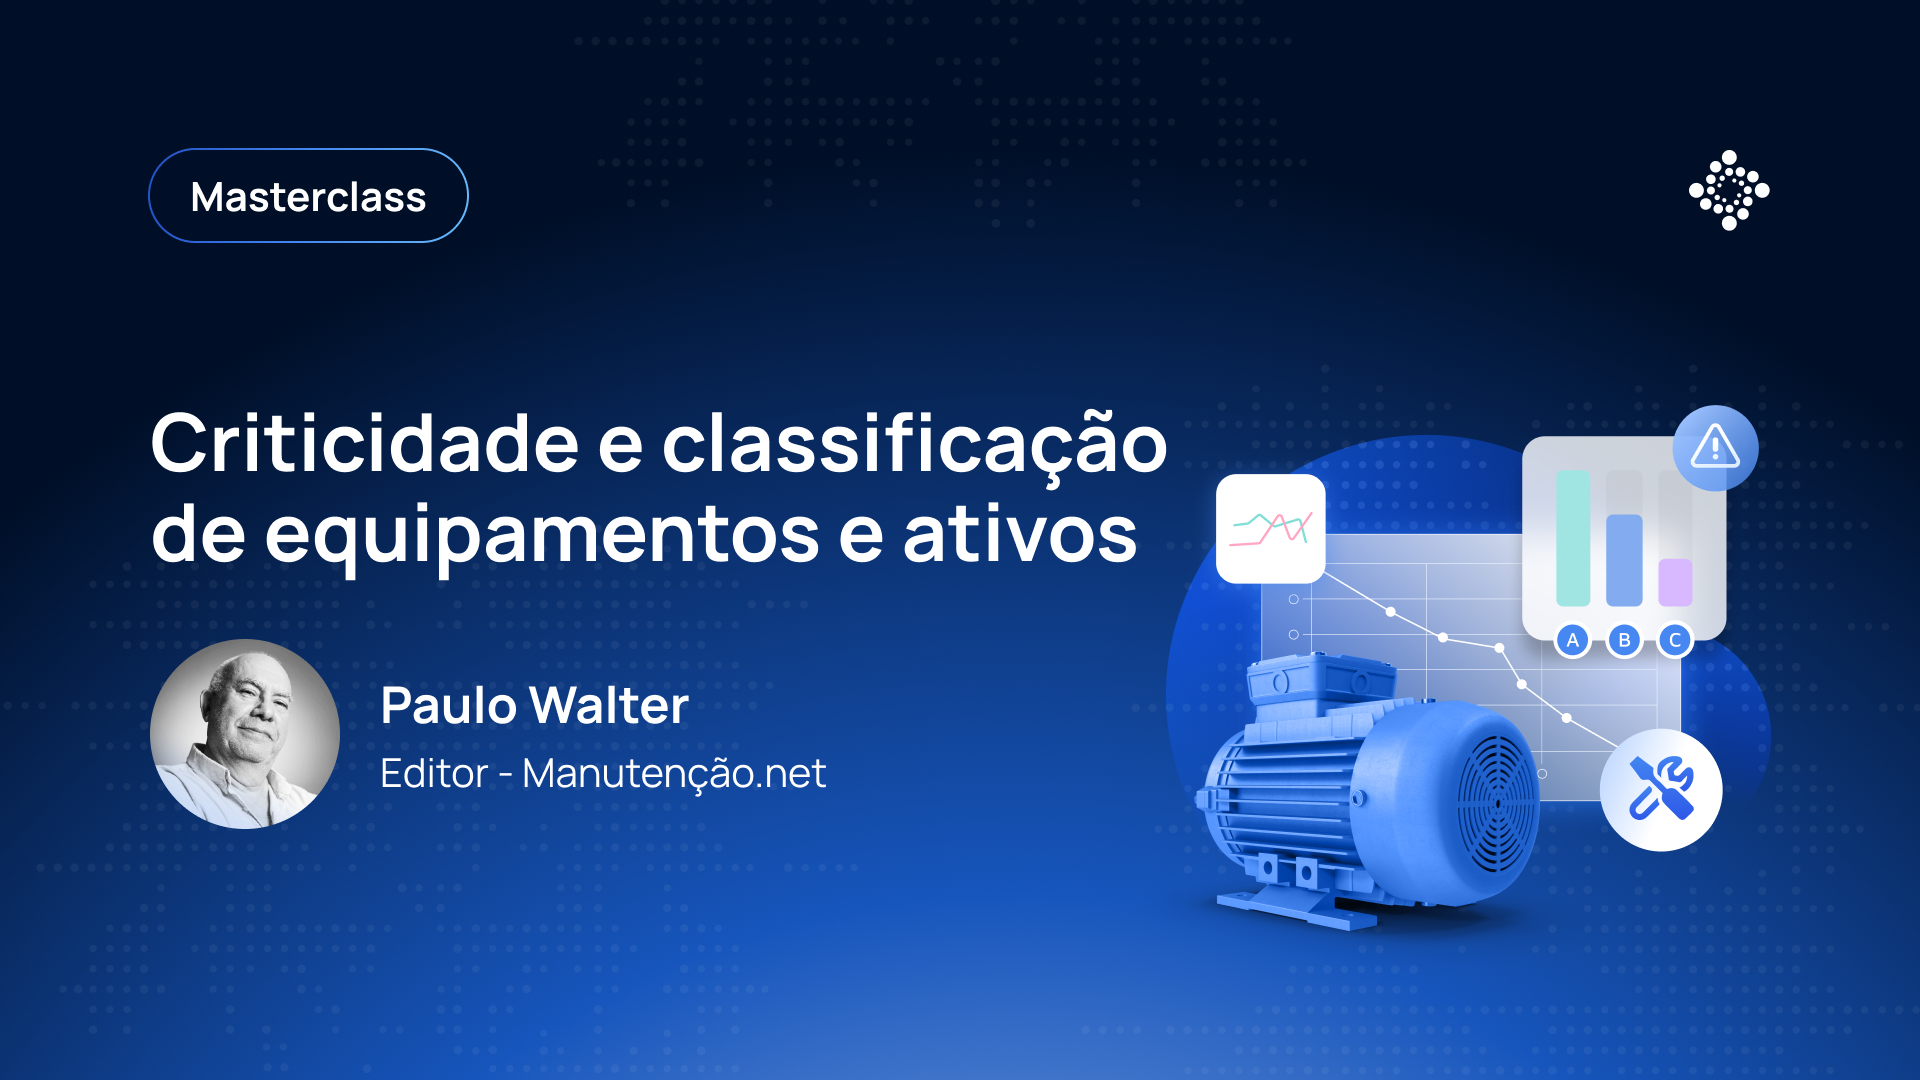 Masterclass: Criticidade e classificação de equipamentos e ativos - Paulo Walter